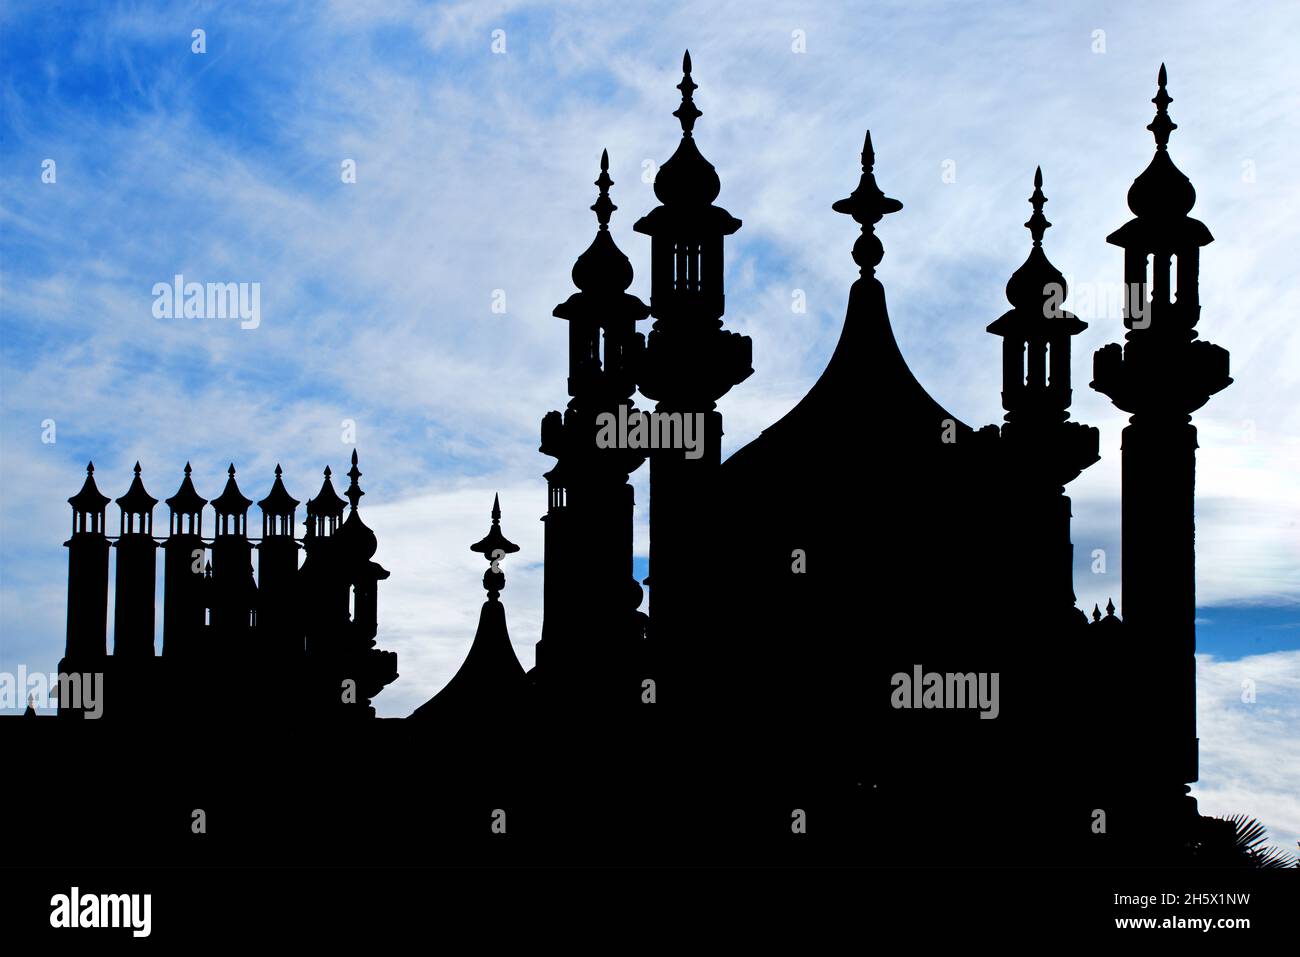 Die indisch inspirierte Architektur des georgianischen Royal Pavilion, Brighton, East Sussex, England, Großbritannien. Schattenkuppel und Minarette. Indo-Saracenic Revival. Stockfoto